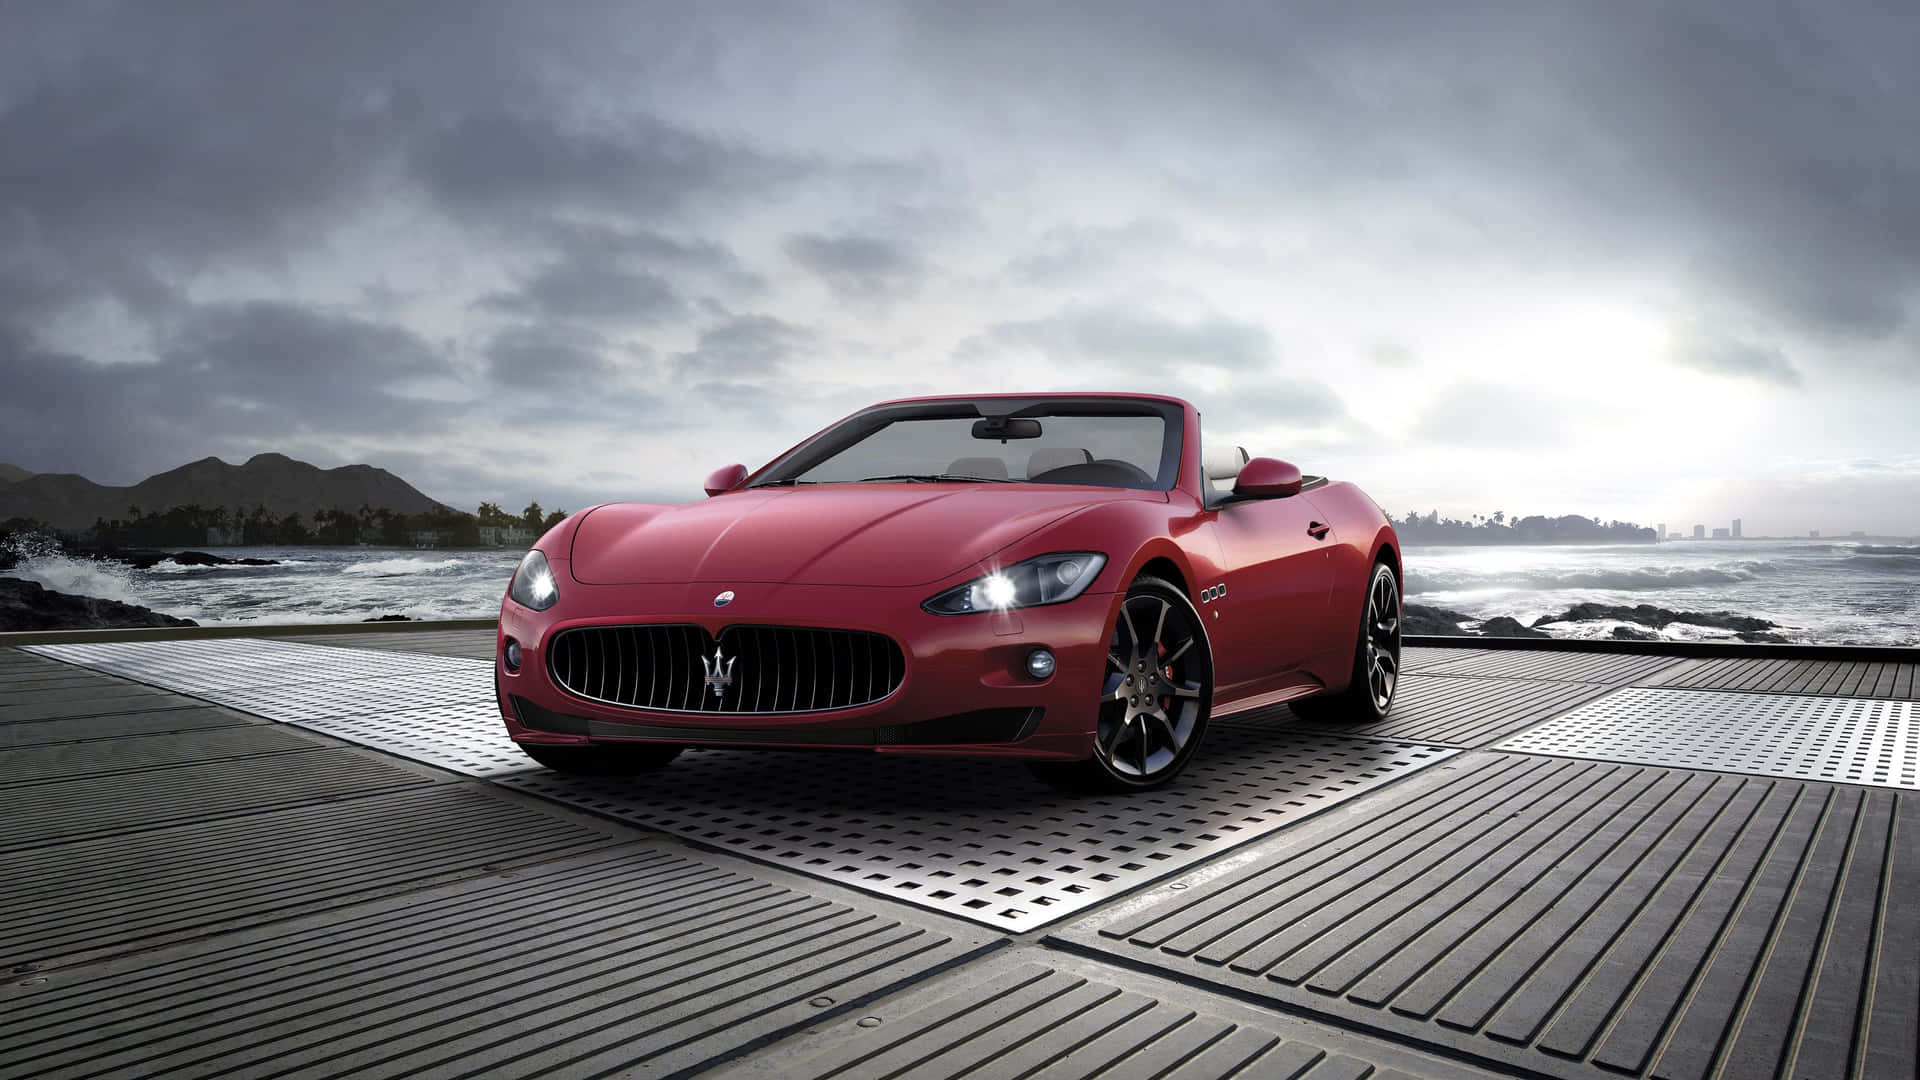 Maseratirojo Estacionado 4k Fondo de pantalla